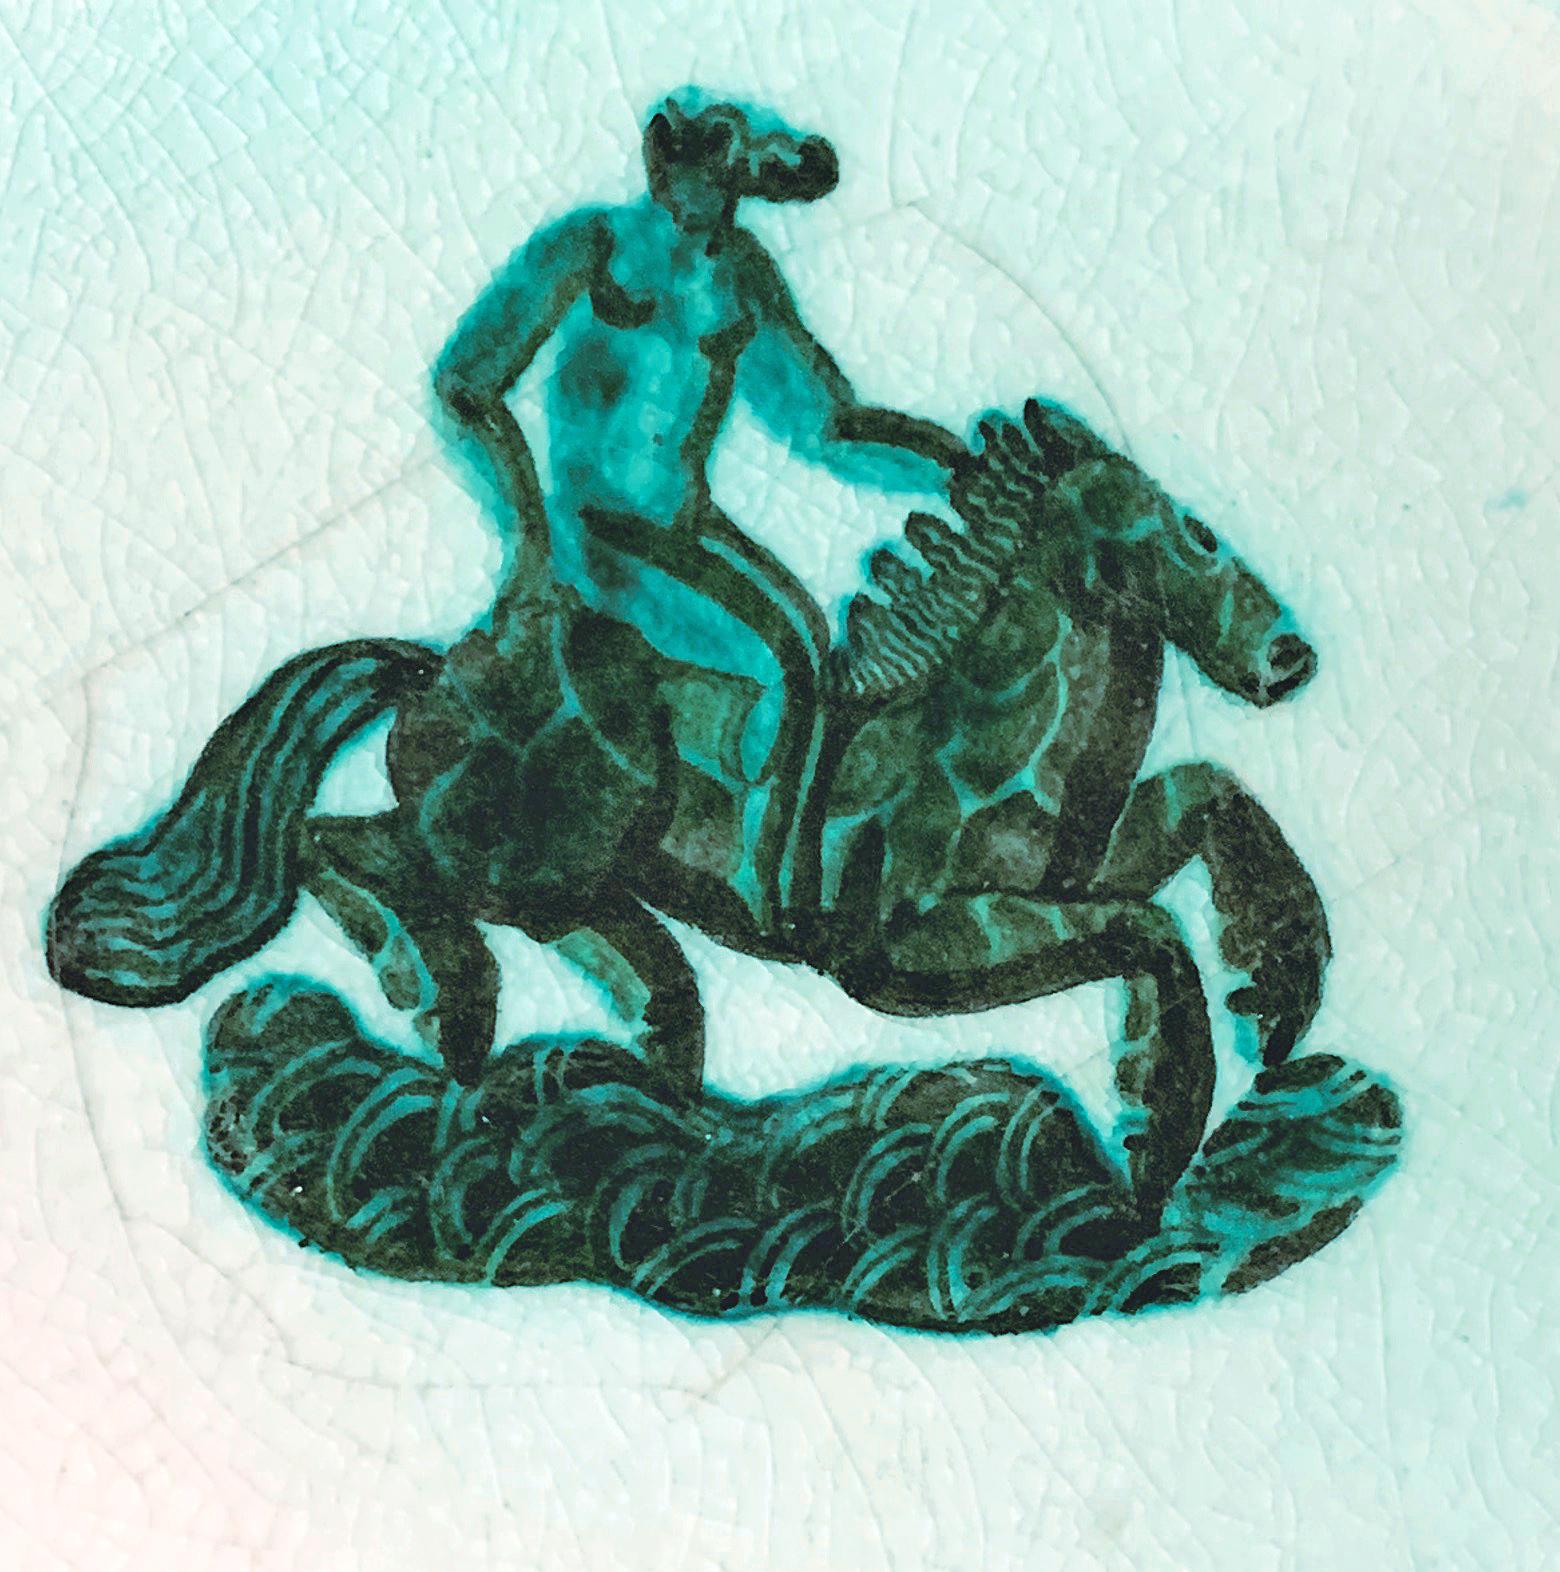 Dieser von Jean Mayodon, einem der großen Meister des Art déco-Porzellans und der Keramik, geschaffene Teller mit hellgrünem Dekor zeigt die Göttin Epona, die Beschützerin der Pferde, auf ihrem Ross. Die schönen, durchscheinenden grünen und weißen